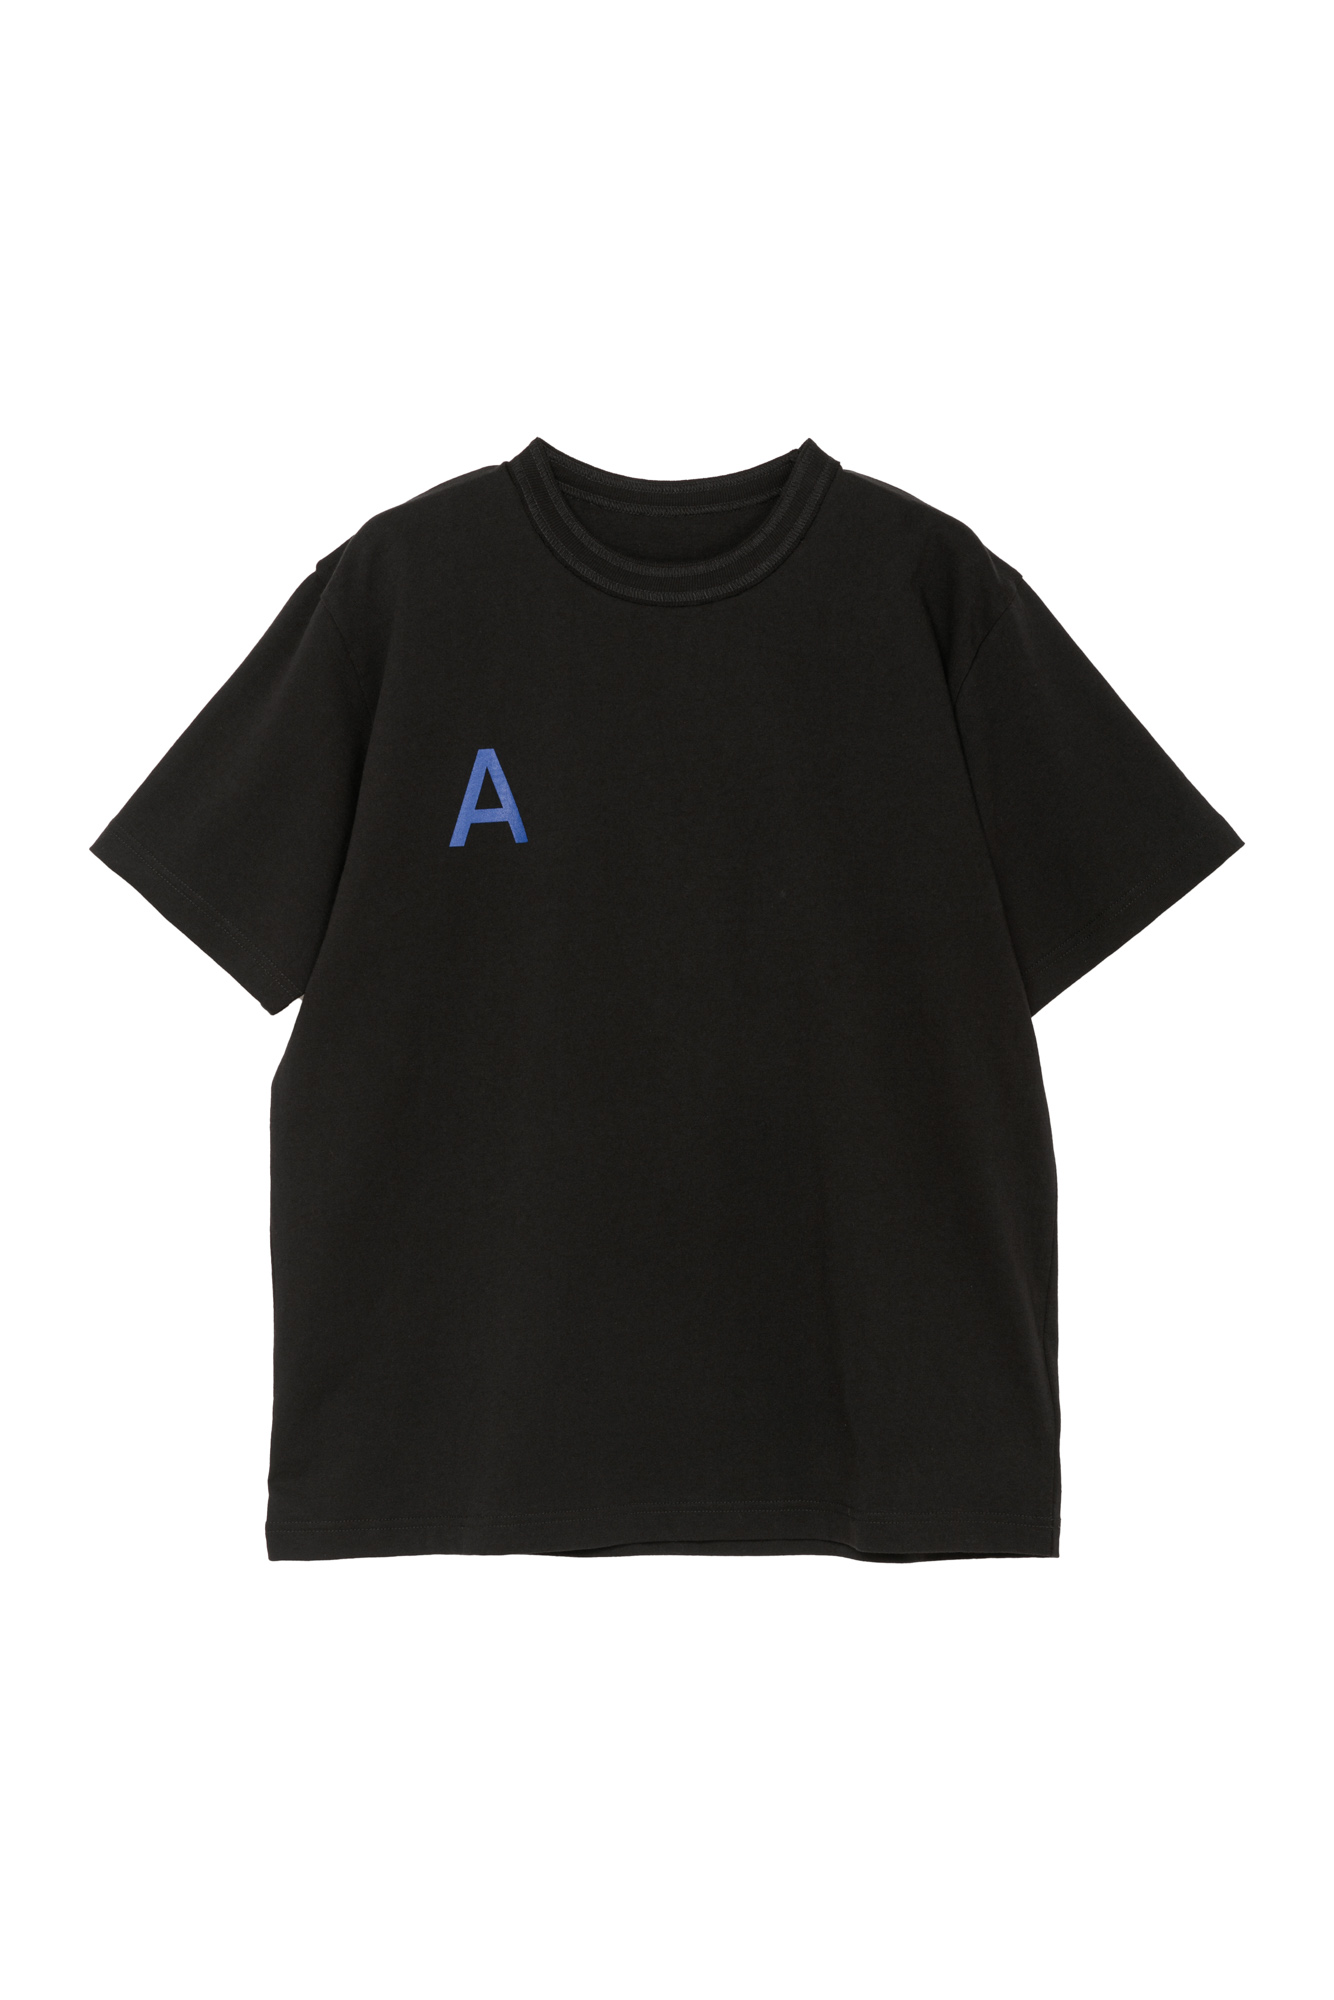 サカイが「A Magazine」との限定Tシャツを発売、マガジンカバーのブルーから着想